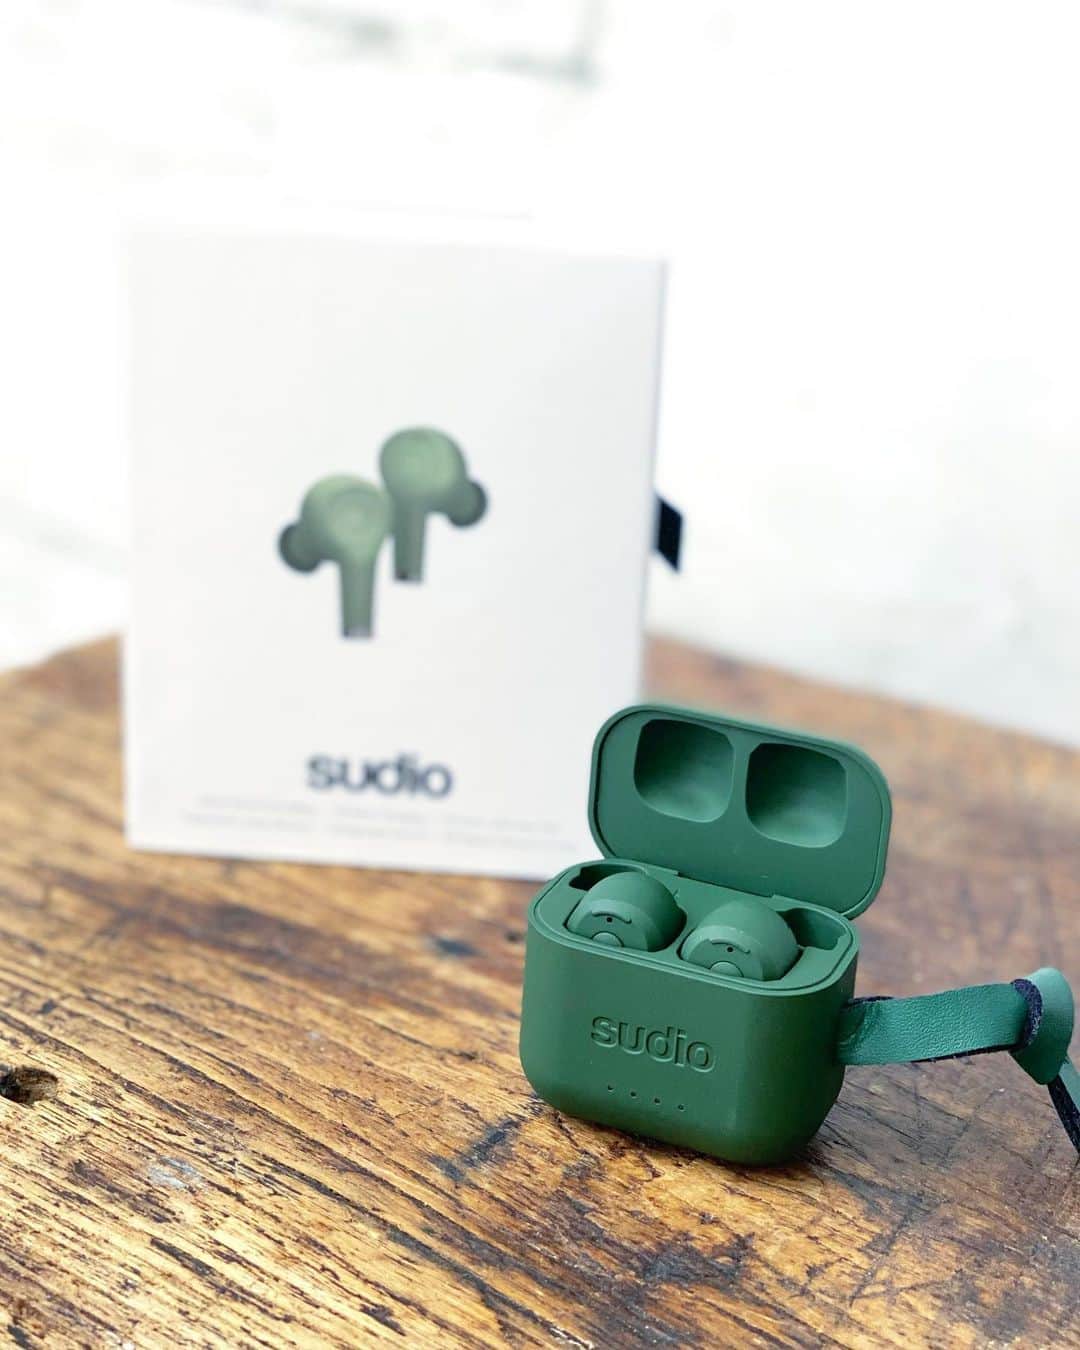 五位渕のぞみさんのインスタグラム写真 - (五位渕のぞみInstagram)「#sudio の #ワイヤレスイヤフォン get😉✨@sudio ㅤㅤㅤㅤㅤㅤㅤㅤㅤ Sudio最新の完全ワイヤレスイヤホンだよっ😍💕 ㅤㅤㅤㅤㅤㅤㅤㅤㅤ ㅤㅤㅤㅤㅤㅤㅤㅤㅤ 💙Ett(エット)💙 color：ETT GREEN ￥17,900 https://www.sudio.com/jp/ett-green ㅤㅤㅤㅤㅤㅤㅤㅤㅤ ㅤㅤㅤㅤㅤㅤㅤㅤㅤ ✅アクティブノイズキャンセリング機能（ANC） サウンドを自由に操ることが可能に。 自動外音取り込み機能によって、 通話時の音声もより自然でクリアに聞こえるの🥰 （👆Sudio製品初めて搭載された機能） ㅤㅤㅤㅤㅤㅤㅤㅤㅤ ✅どんな天候にも対応 IPX5対応の防水性能で、天候に左右されることなく、いつでもどこでもあらゆるシーンで自由に音楽を楽しめちゃう。 ㅤㅤㅤㅤㅤㅤㅤㅤㅤ ✅#ワイヤレス充電 置くだけで充電できるワイヤレス充電にも対応なので充電もスマートにできます  ㅤㅤㅤㅤㅤㅤㅤㅤㅤ カラーがカーキでとっても珍しくてものすごくお気に入り💚 コーデのワンポイントにもなるから嬉しい😍💕 ㅤㅤㅤㅤㅤㅤㅤㅤㅤ  14gと軽量だからつけてる感ないし、 9時間のバッテリー持続性もありがたい🥰❤️ ㅤㅤㅤㅤㅤㅤㅤㅤㅤ ㅤㅤㅤㅤㅤㅤㅤㅤㅤ 🎁15%off公式サイト専用クーポンコード 🎁 【nonnon 】 有効期限：2021/1/31まで ㅤㅤㅤㅤㅤㅤㅤㅤㅤ ㅤㅤㅤㅤㅤㅤㅤㅤㅤ 💗いい音と暮らそうWeek特別キャンペーン💗 11月4日か〜11月11日 オンラインサイトで25％OFF クーポン使用で最大35%OFF ギフト包装もプレゼント 全国配送料無料 + Sudio Sphereご登録で3年間の製品保証をお届け。 ㅤㅤㅤㅤㅤㅤㅤㅤㅤ ㅤㅤㅤㅤㅤㅤㅤㅤㅤ このお得な時にぜひチェックしてみてね😘💋 ㅤㅤㅤㅤㅤㅤㅤㅤㅤ  ㅤㅤㅤㅤㅤㅤㅤㅤㅤ ㅤㅤㅤㅤㅤㅤㅤㅤㅤ  ㅤㅤㅤㅤㅤㅤㅤㅤㅤ ㅤㅤㅤㅤㅤㅤㅤㅤㅤ ㅤㅤㅤㅤㅤㅤㅤㅤㅤ  ㅤㅤㅤㅤㅤㅤㅤㅤㅤ  #sudio #sudiomoments #sudiojp #shapingsound #PR #イヤホン#ワイヤレス#北欧デザイン #이어폰 #다이칸야마 #도쿄 #뷰스타그램  #셀스타그램 #일본 #tokyo #japan #모델 #패션스타그램 #데일리 #ootd #코디 #インフルエンサー #インスタグラマー」11月5日 16時51分 - nonnon0319